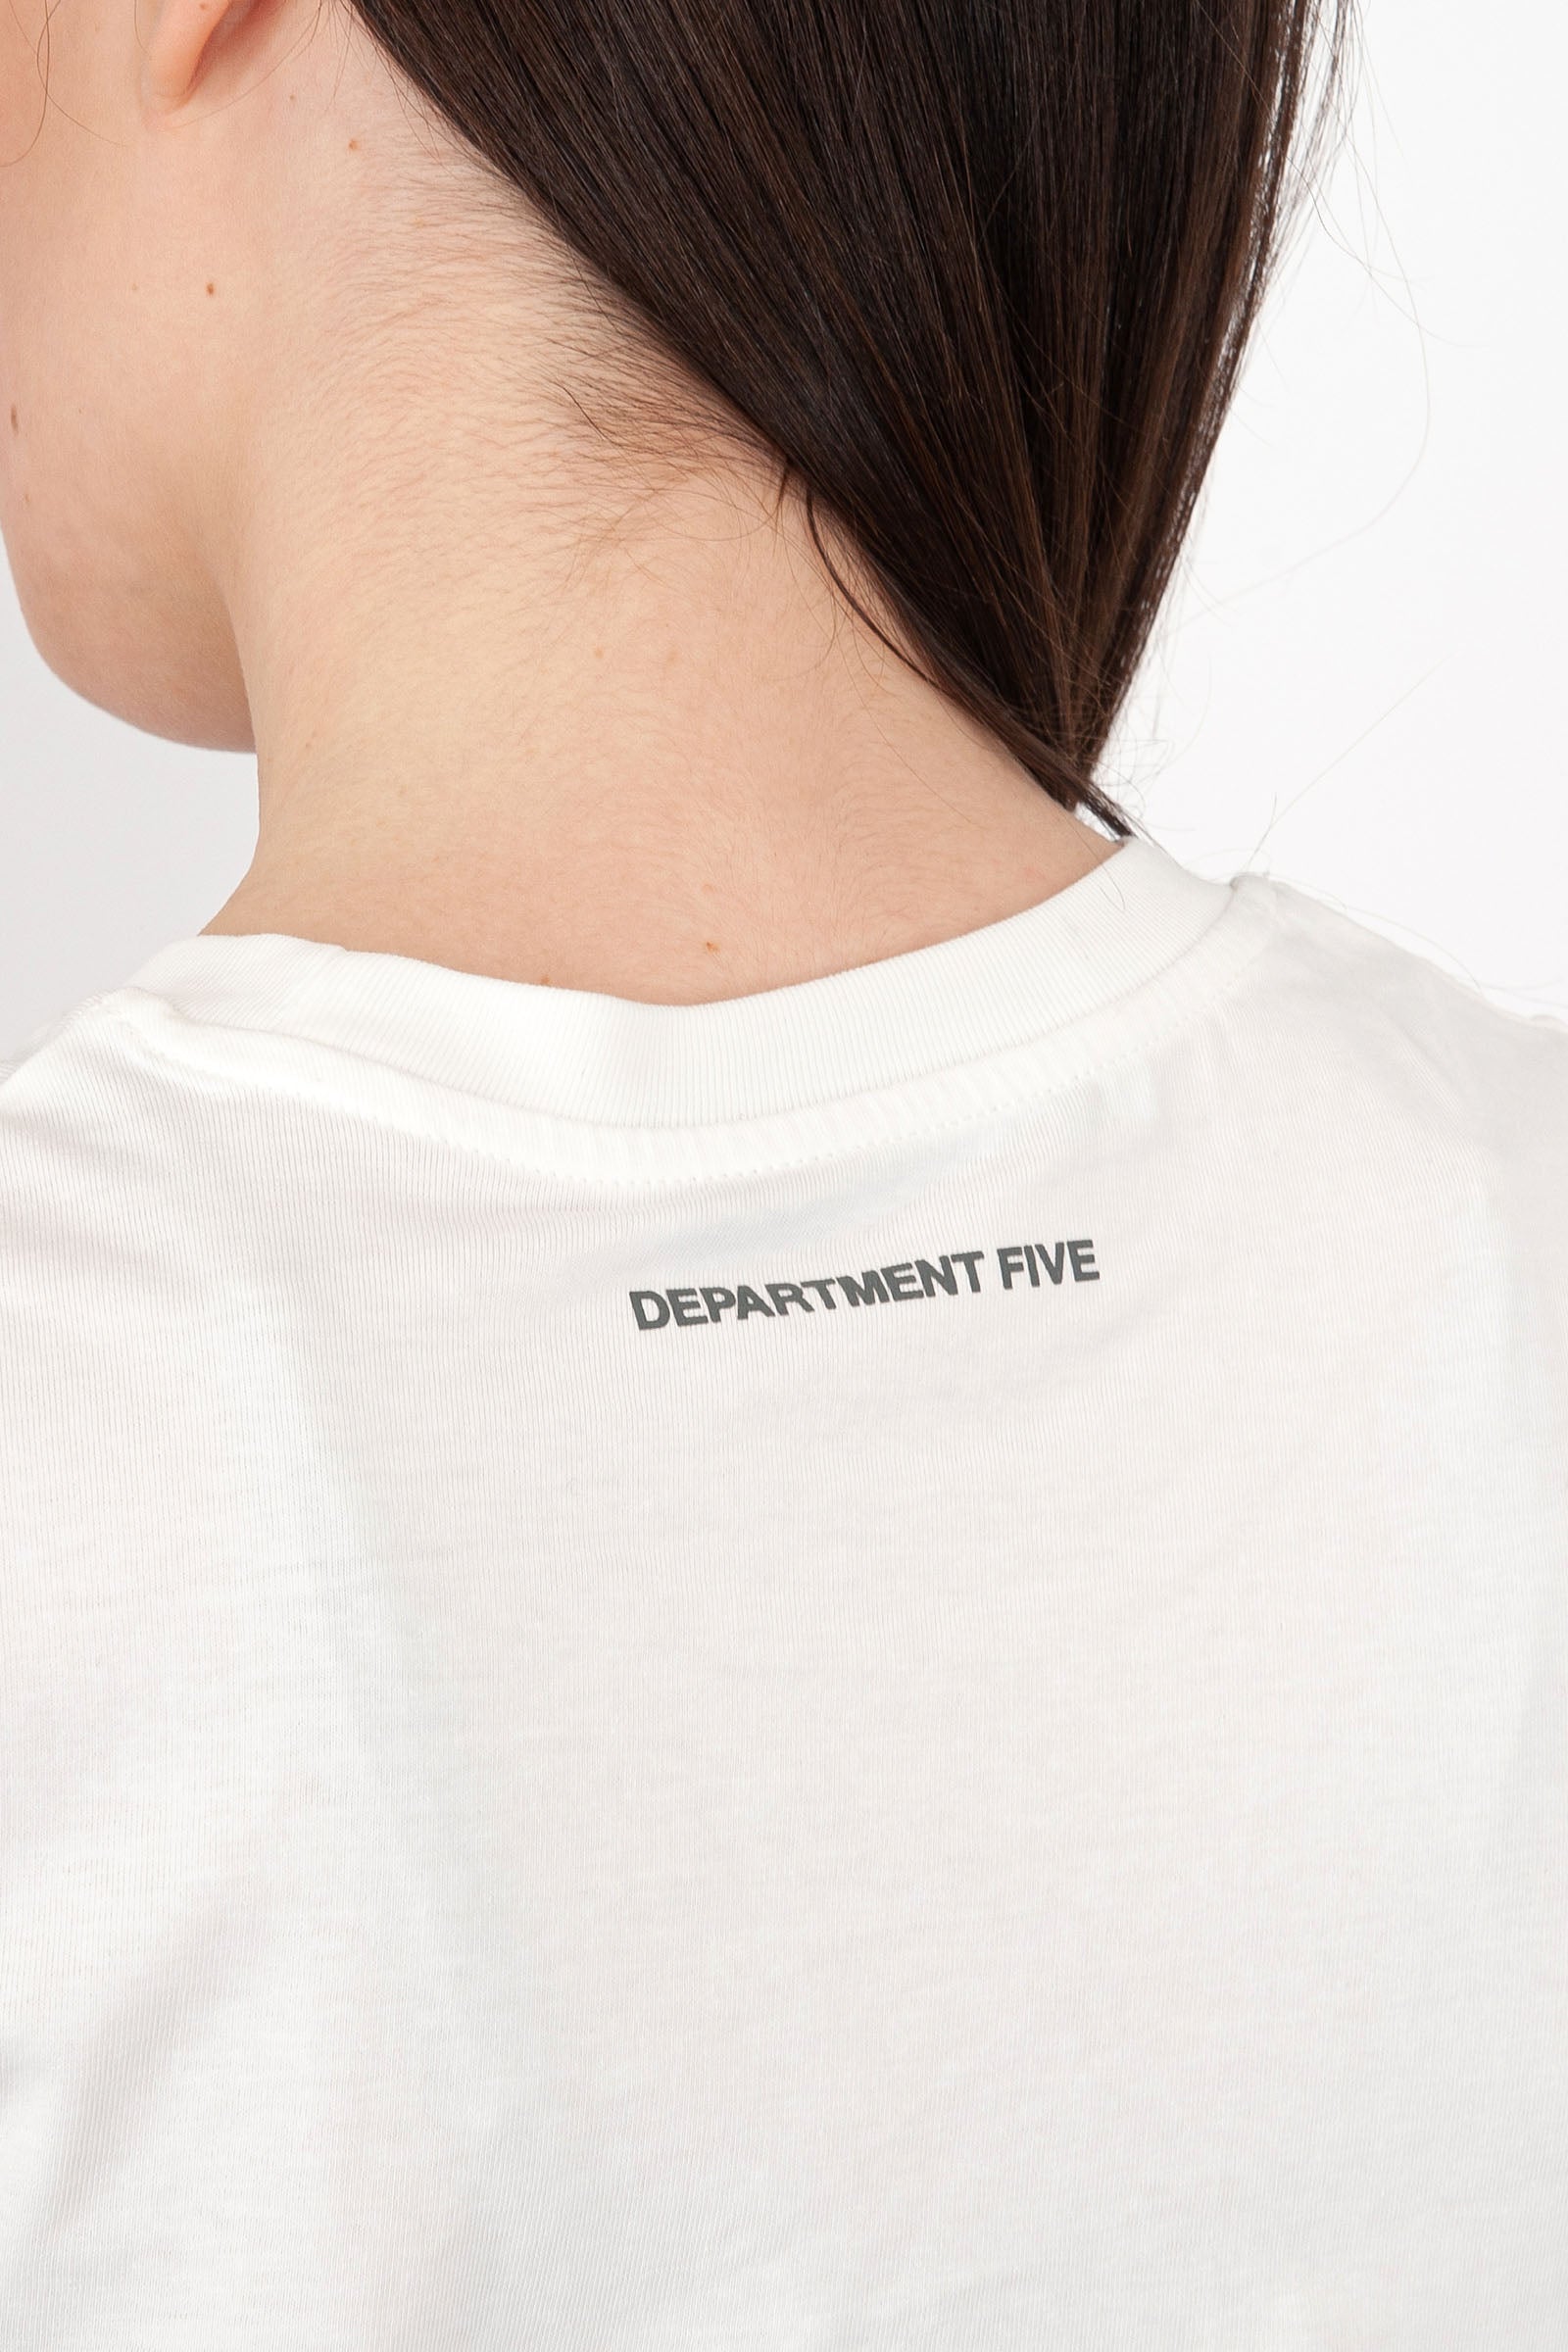 Department Five Crewneck Fleur T-Shirt in White Cotton - 5